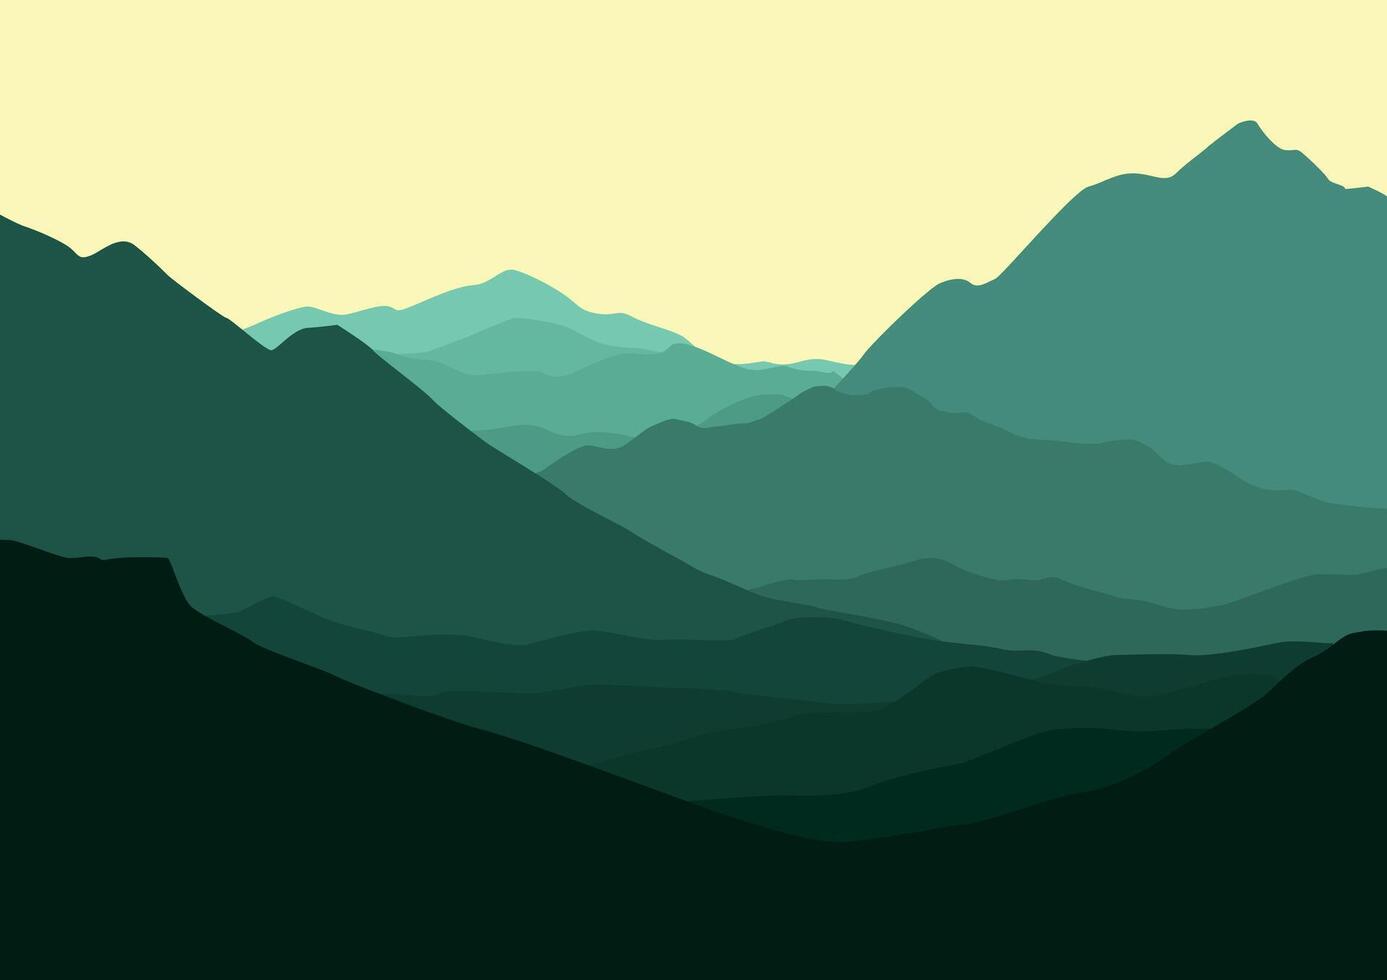 paisaje con montañas. ilustración en plano estilo. vector